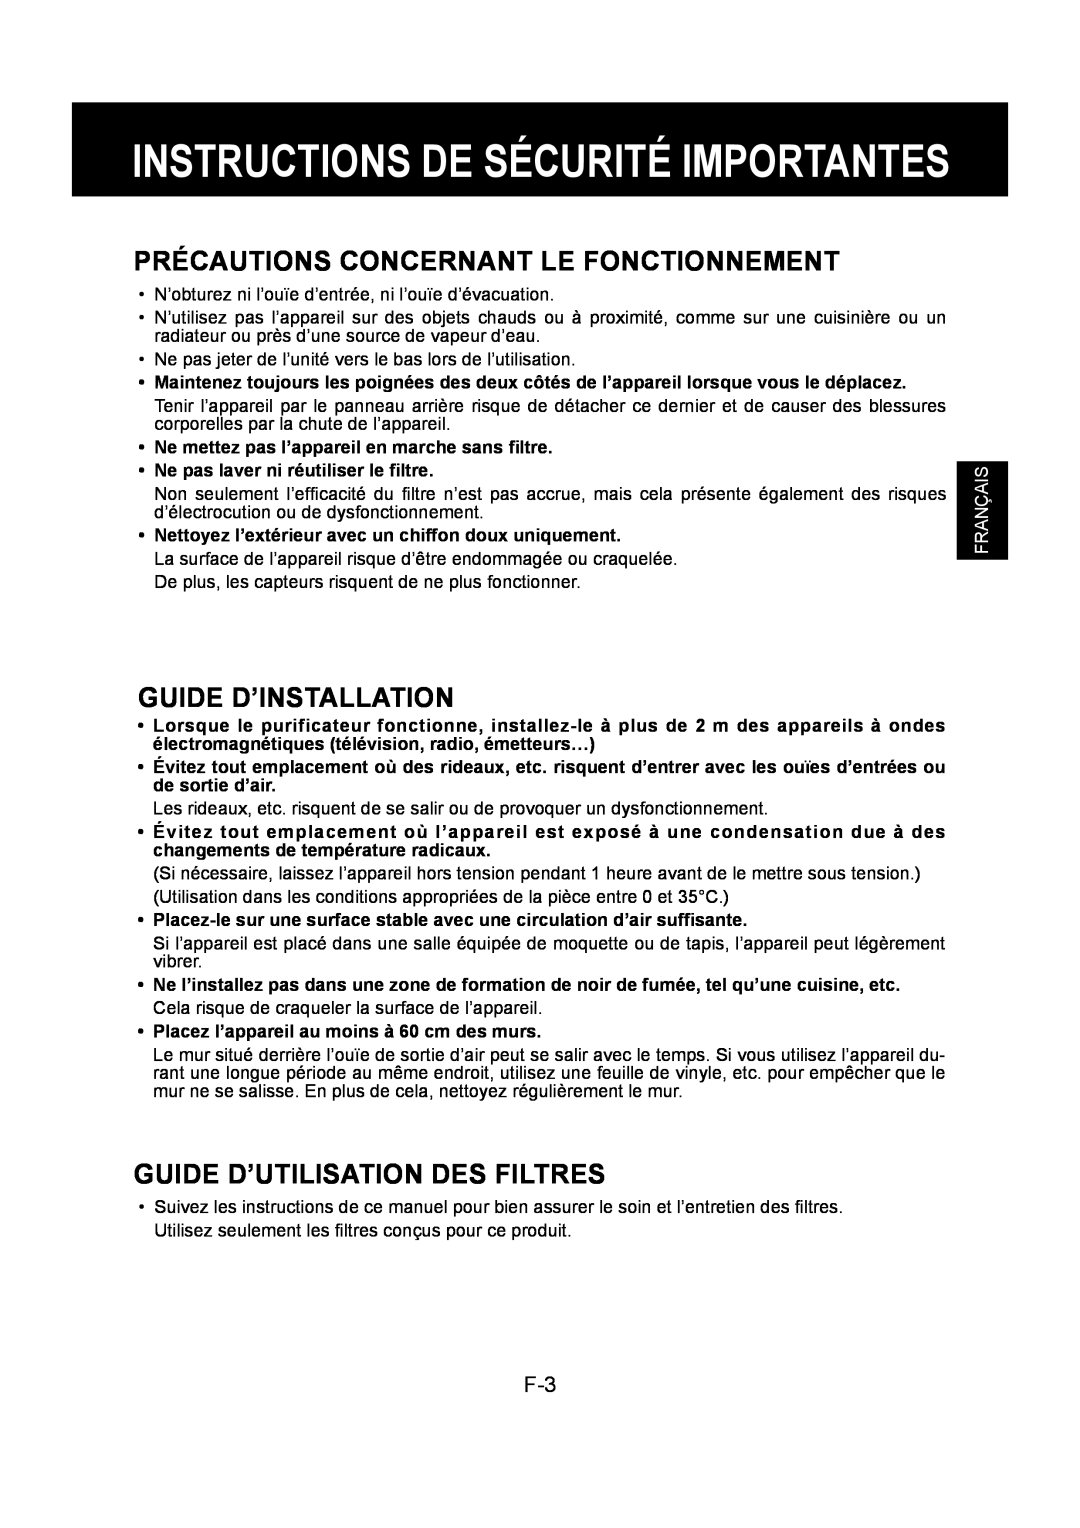 Sharp FU-Y30EU Instructions De Sécurité Importantes, Précautions Concernant Le Fonctionnement, Guide D’Installation 